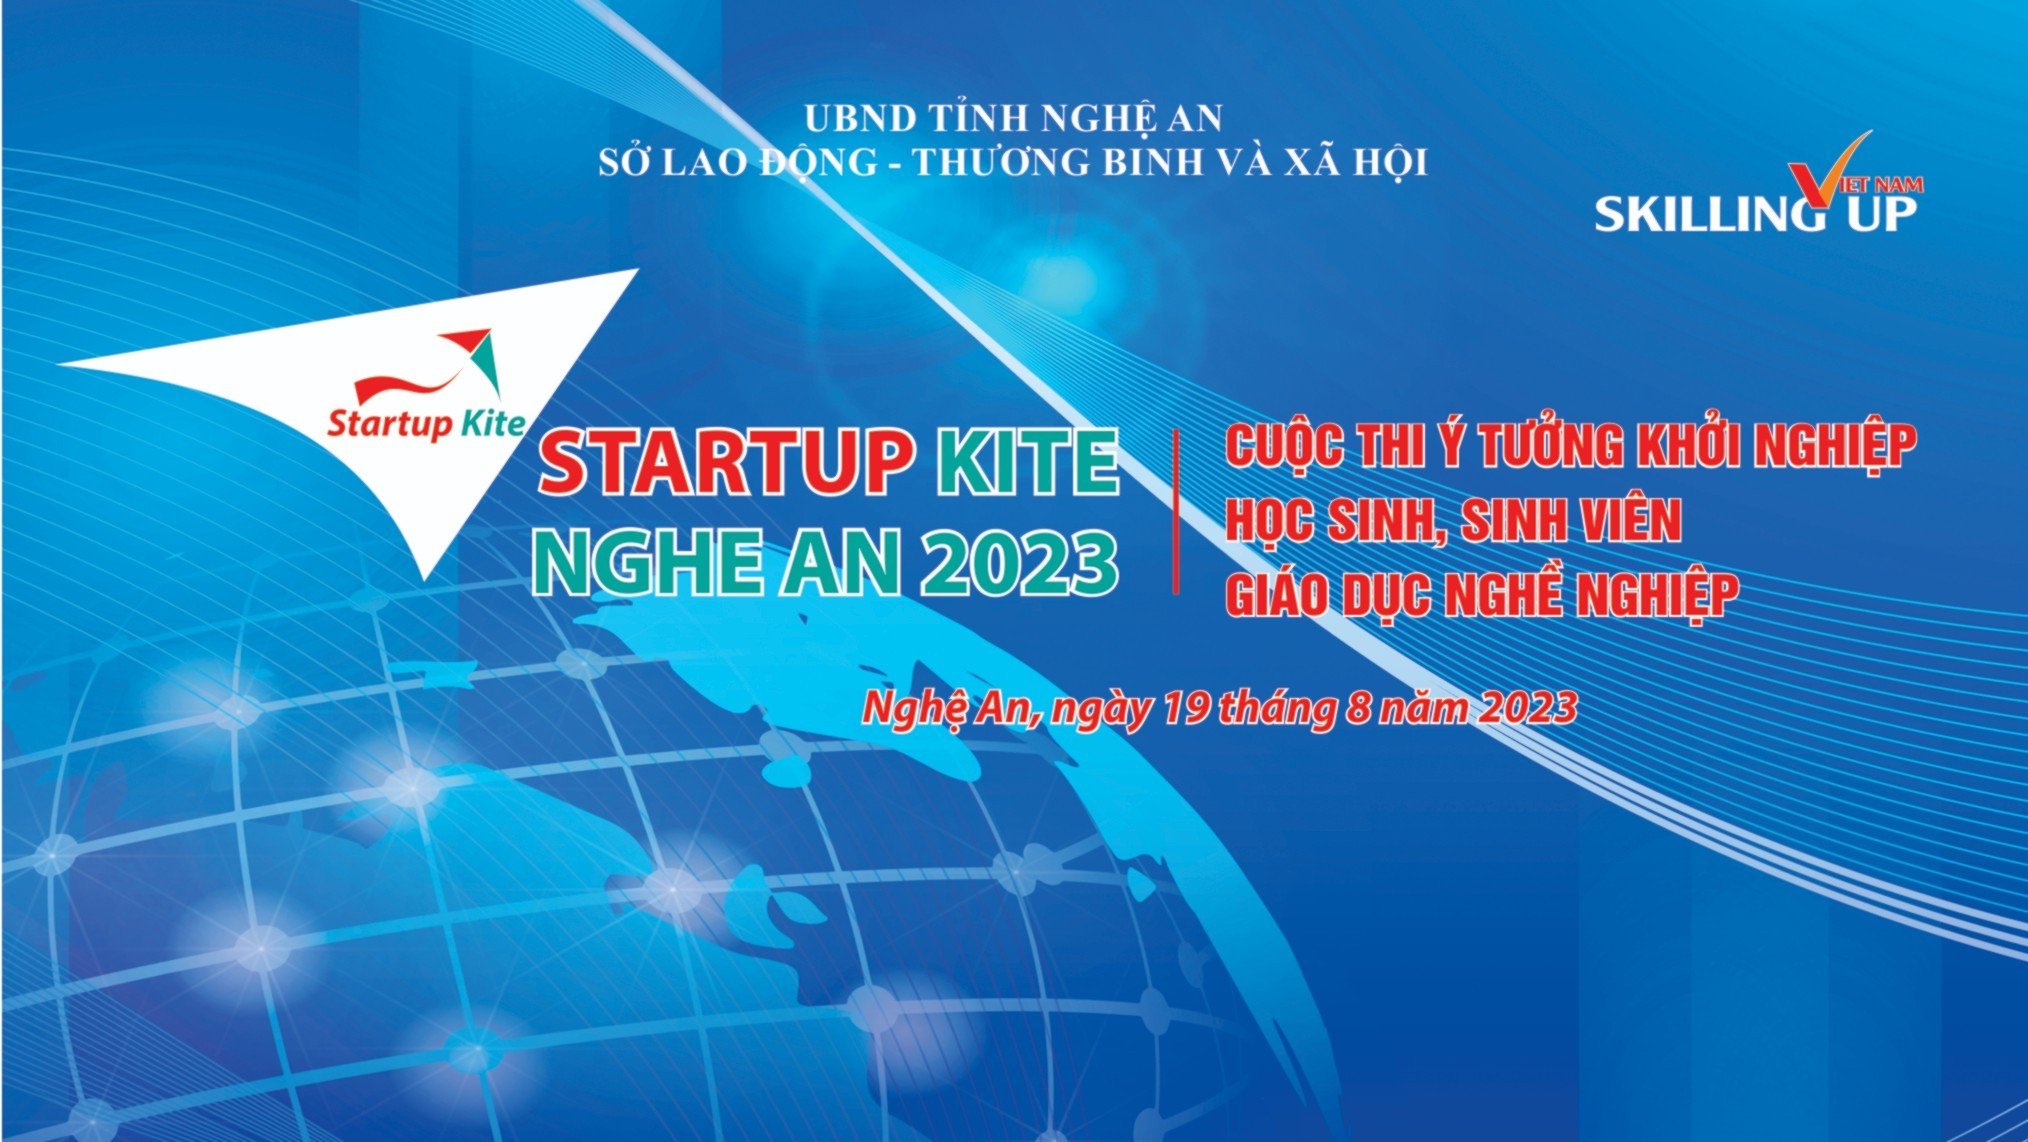 Cuộc thi “Ý tưởng khởi nghiệp học sinh, sinh viên giáo dục nghề nghiệp tỉnh Nghệ An năm 2023” - Startup Kite Nghe An 2023